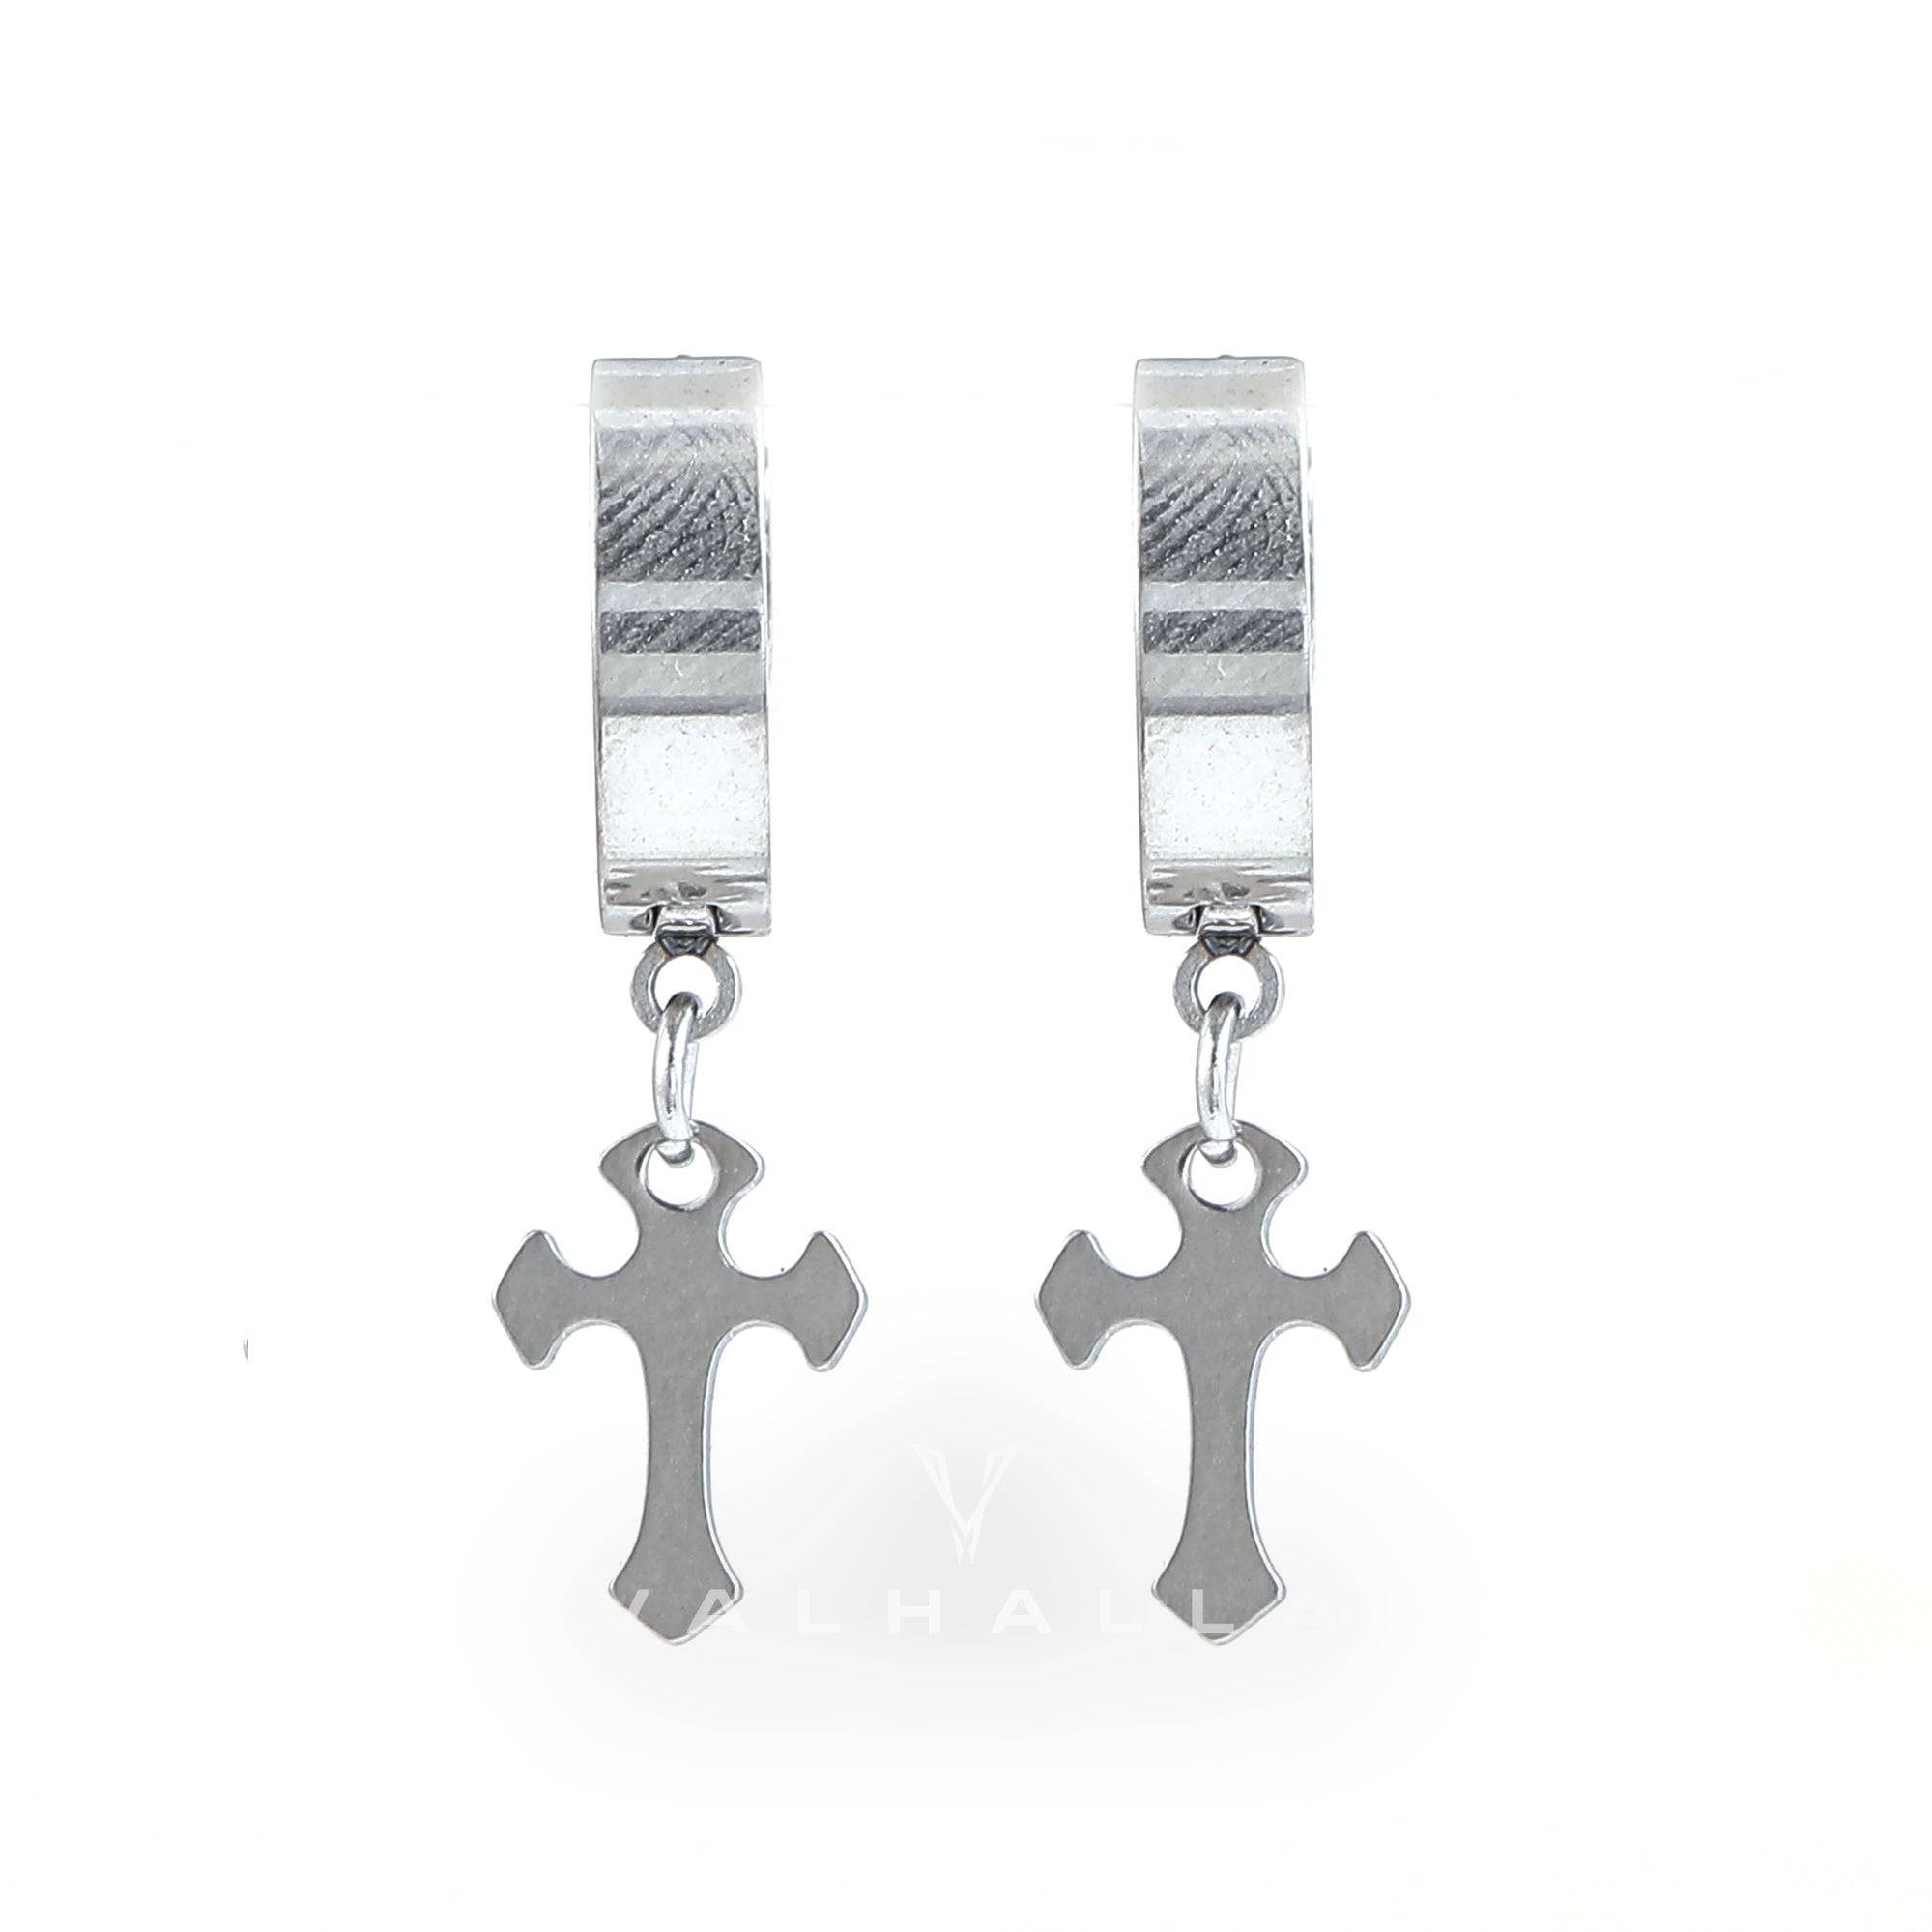 Simple Cross Design Stainless Steel Earrings